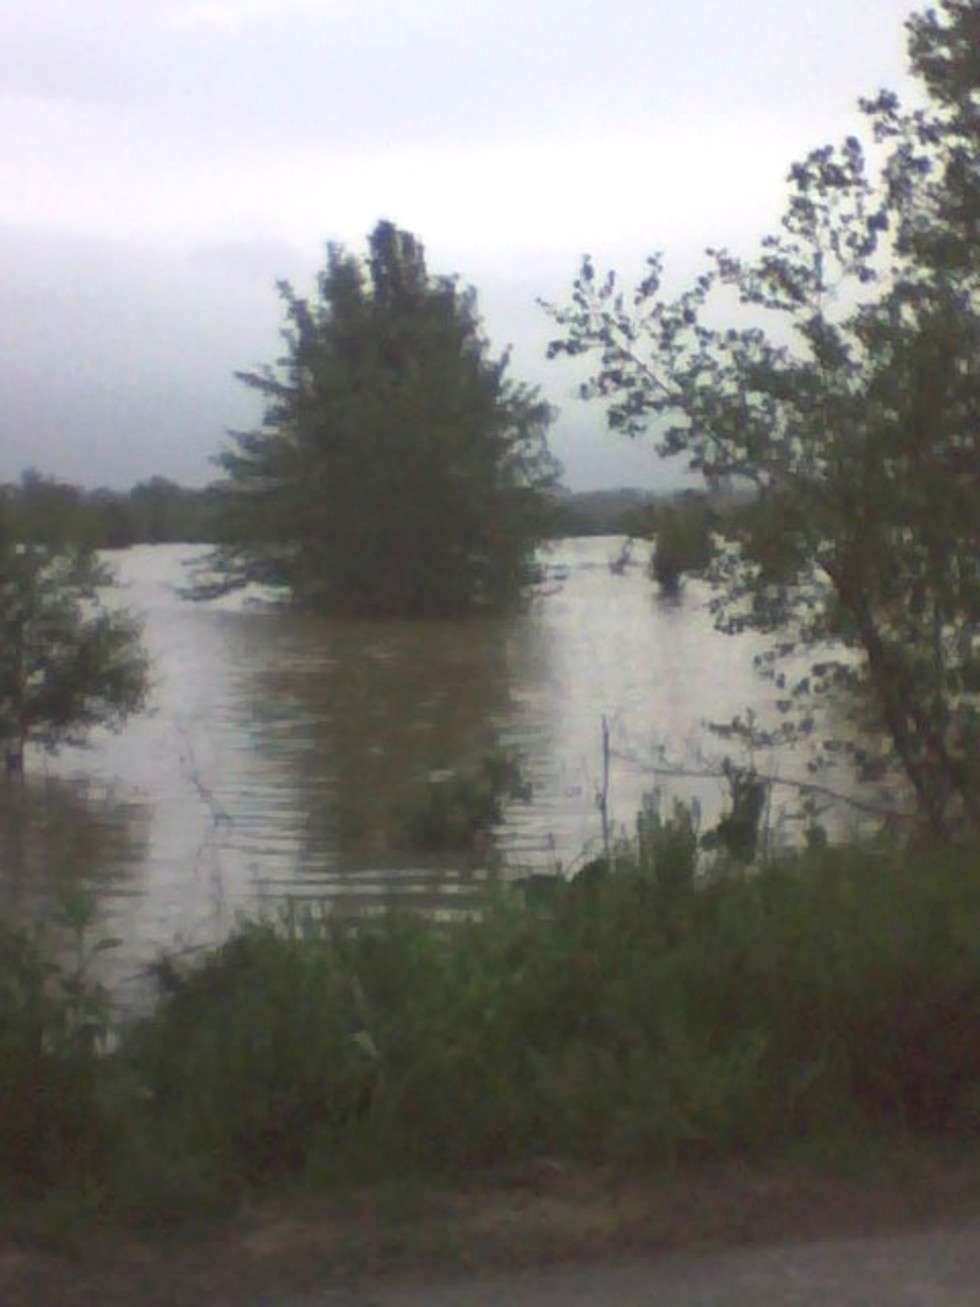  Wisla wylala w okolicach miejscowości Kopiec i Jakubowice w poblizu Annopola.